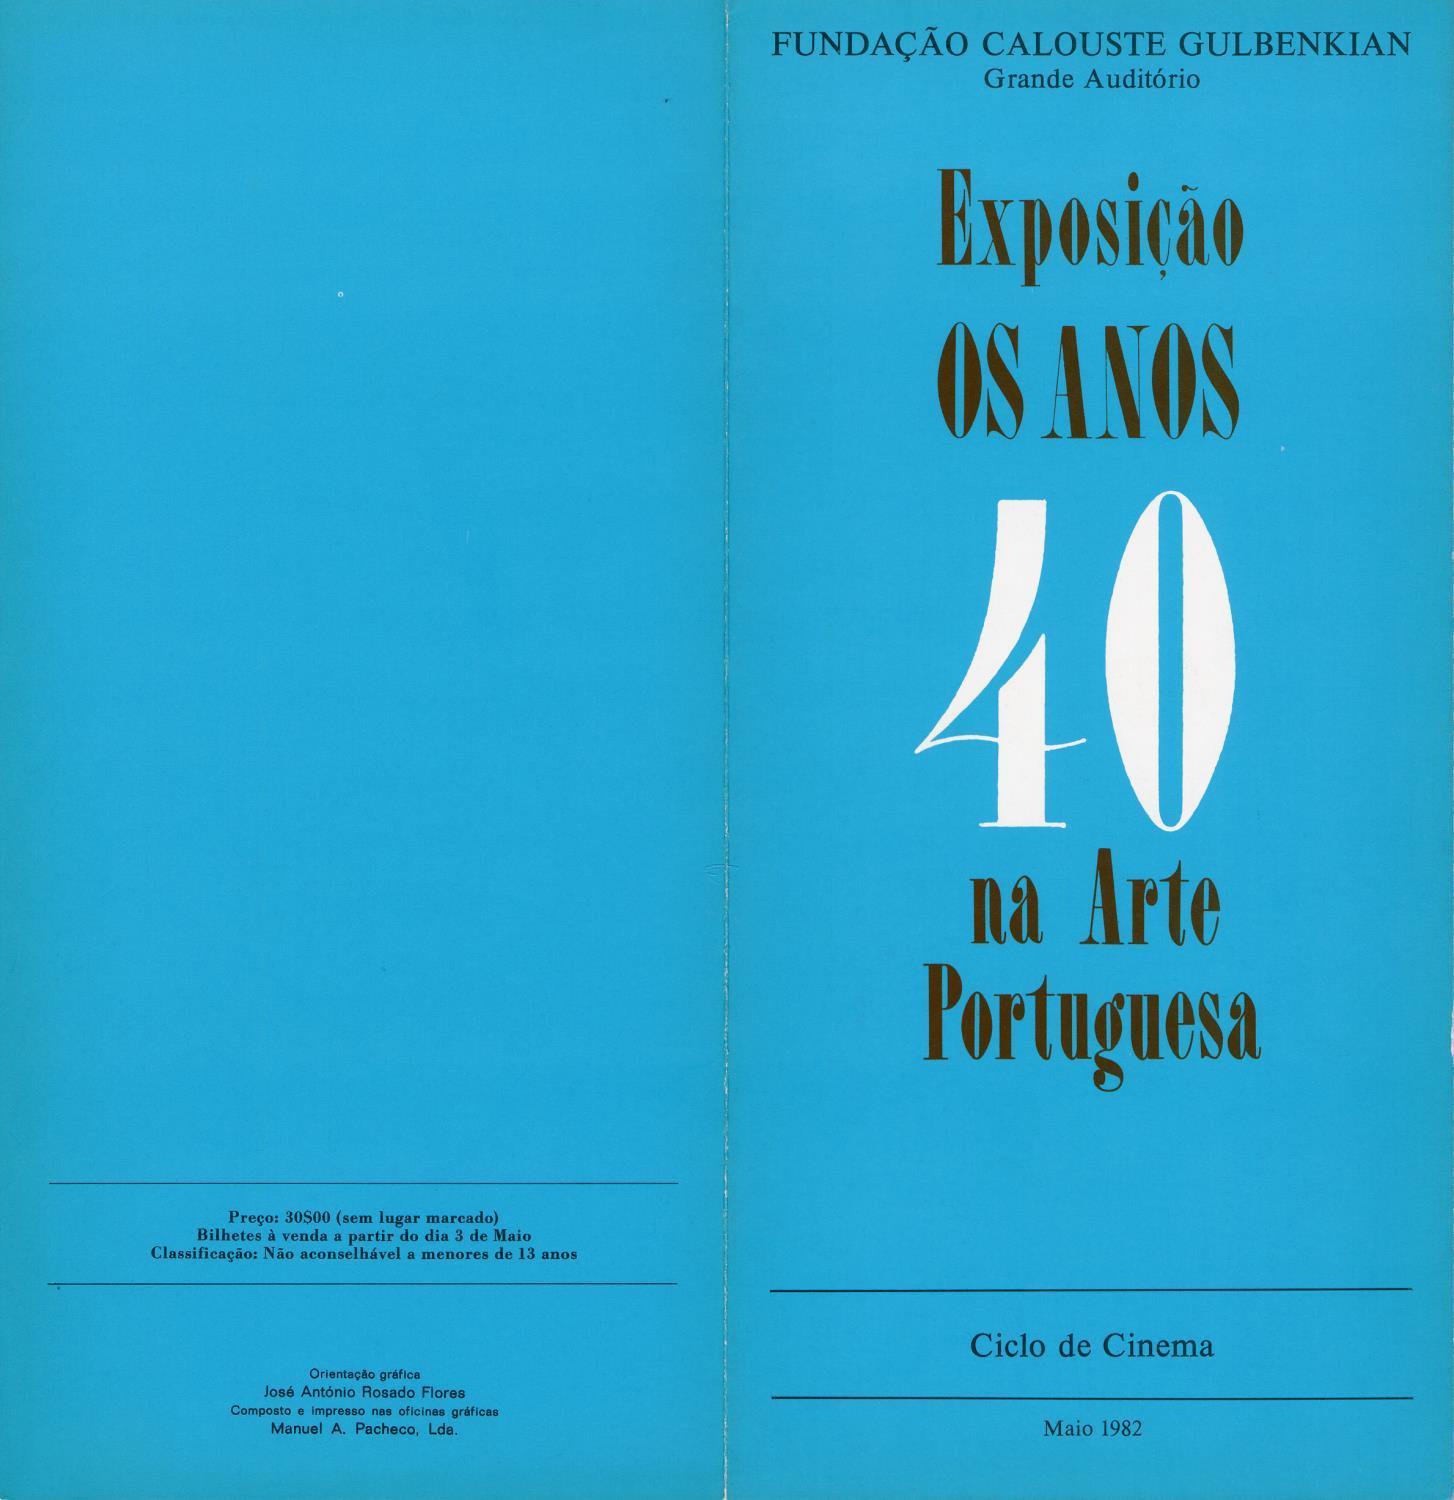 Os Anos 40 na Arte Portuguesa [ciclo de cinema]